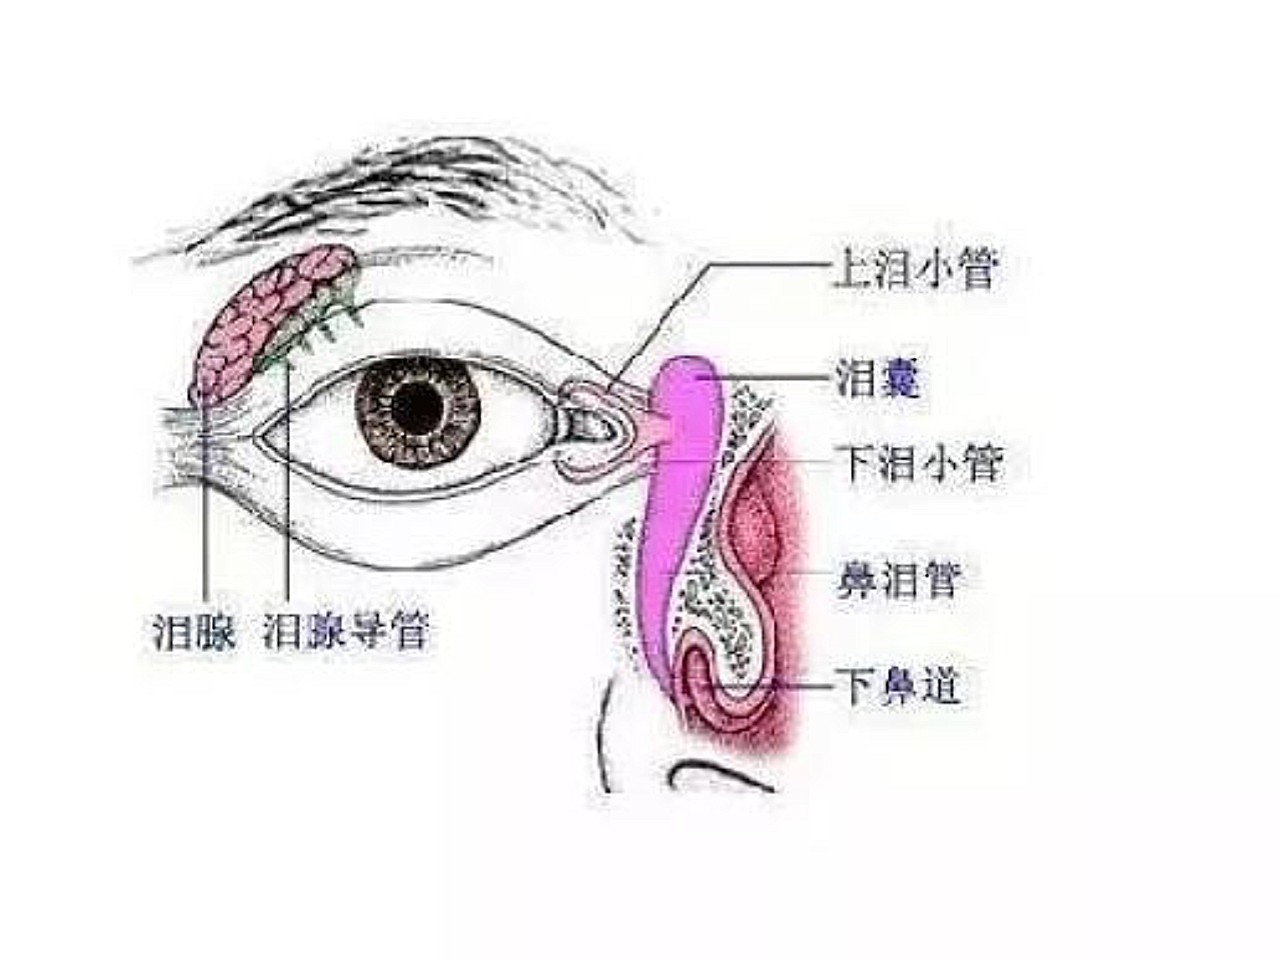 泪腺的位置图片